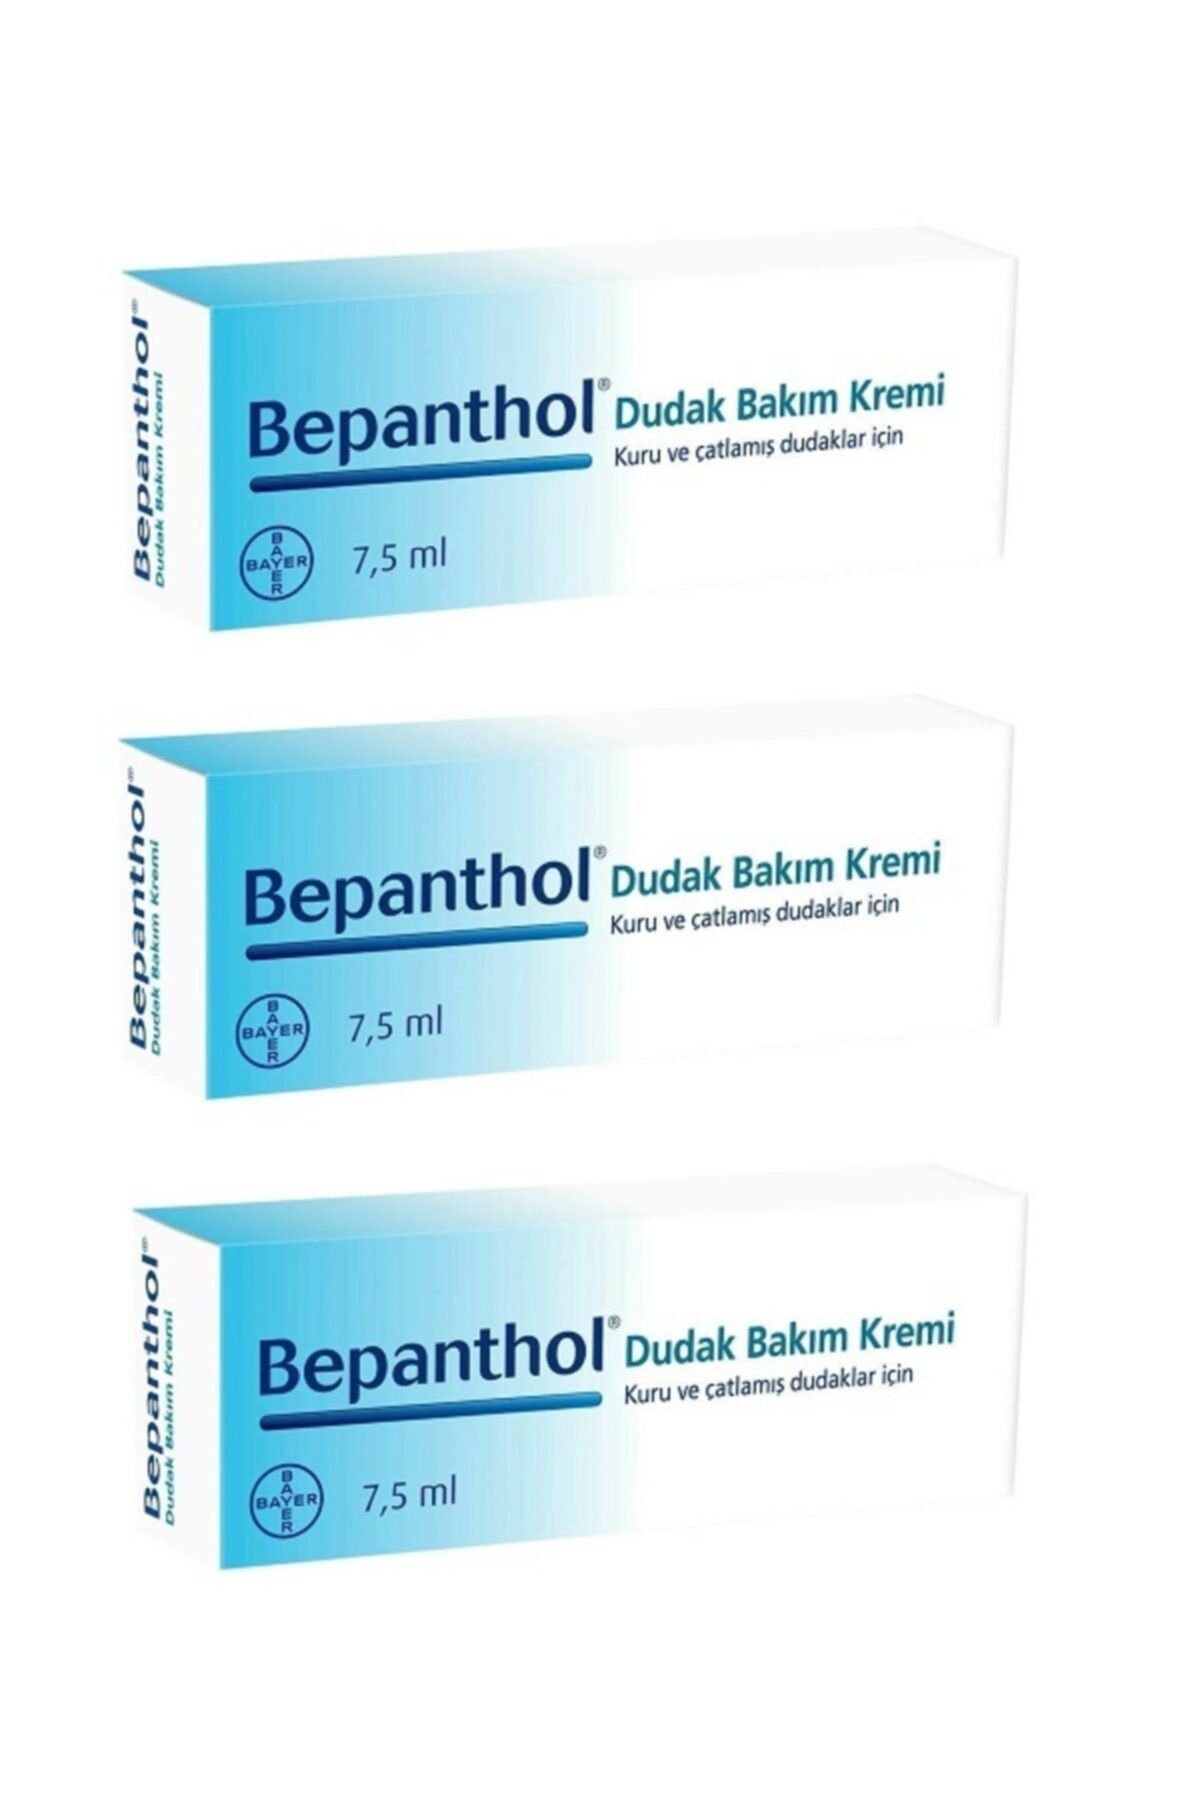 Bepanthol E Vitamini Içeren Dudak Bakım Kremi 7.5 ml - 3'lü Paket